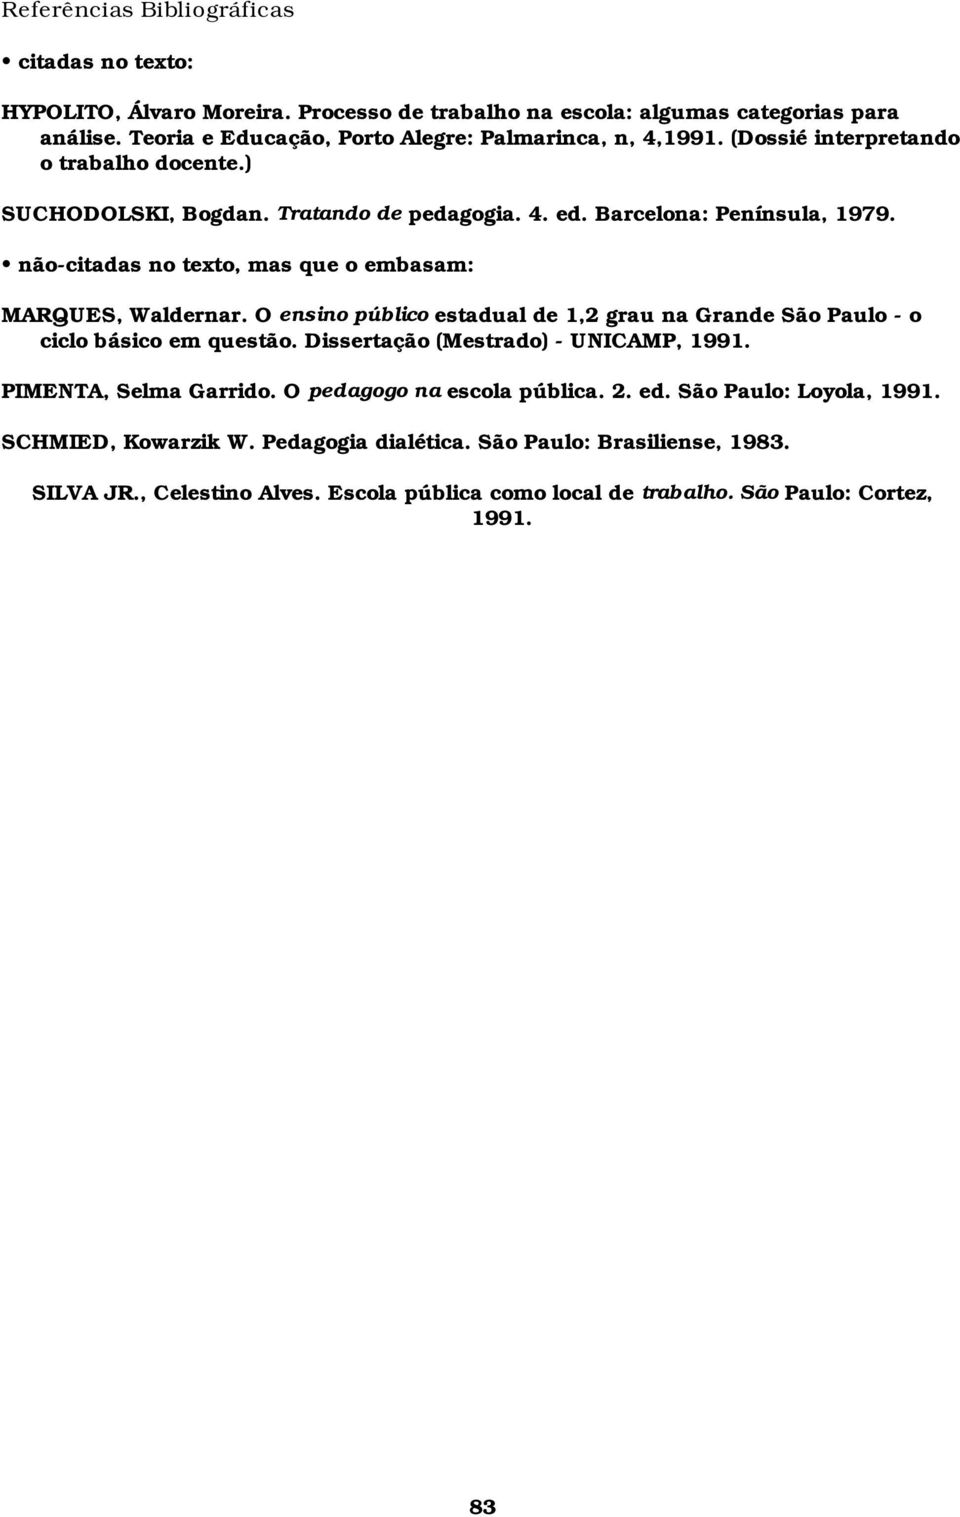 não-citadas no texto, mas que o embasam: MARQUES, Waldernar. O ensino público estadual de 1,2 grau na Grande São Paulo - o ciclo básico em questão. Dissertação (Mestrado) - UNICAMP, 1991.